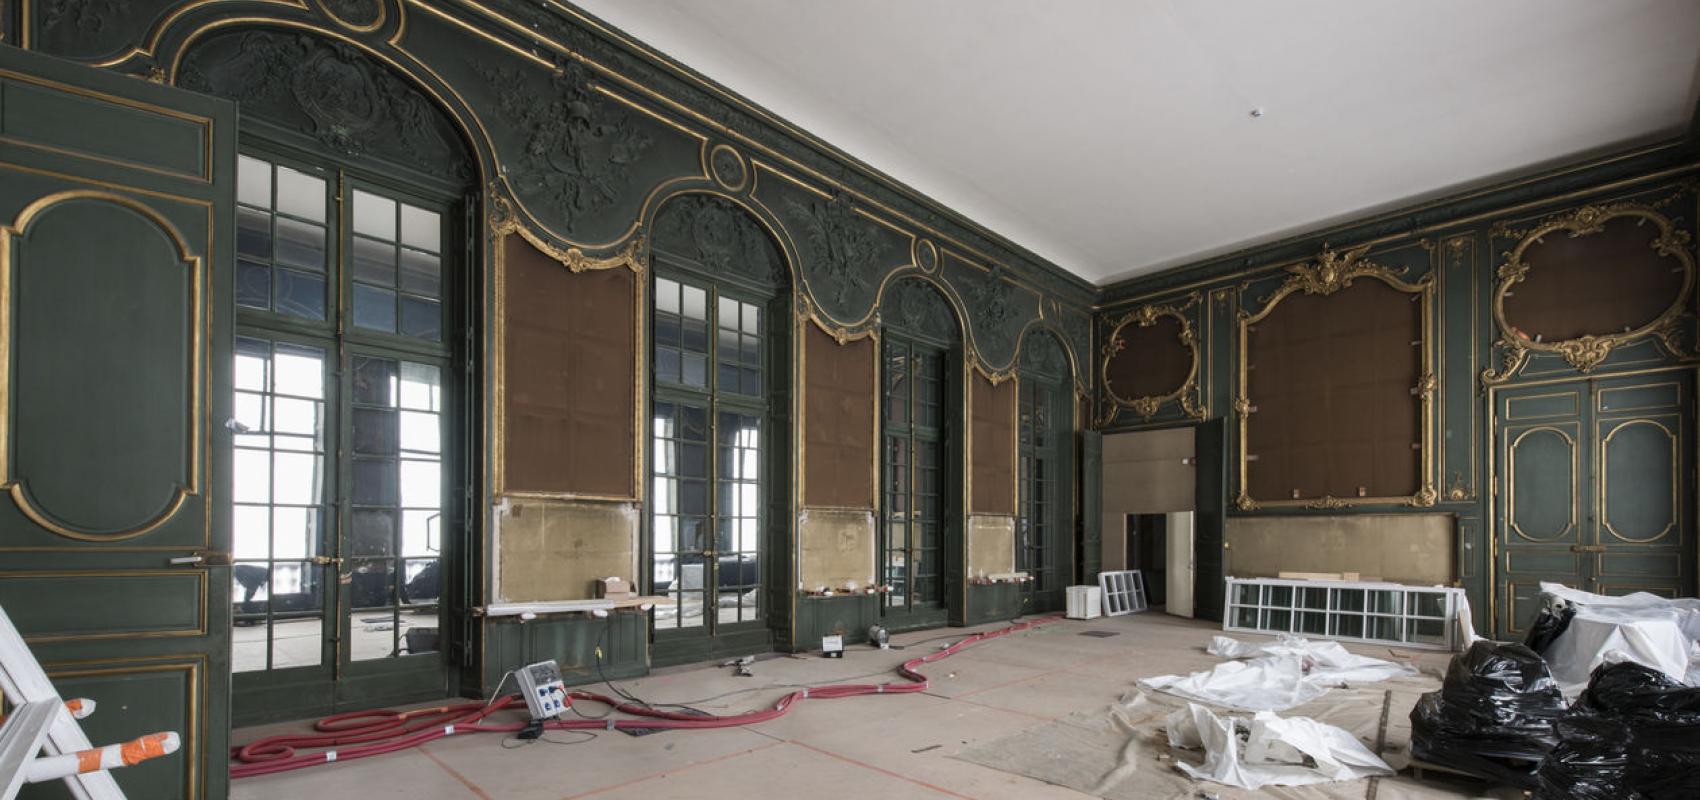 Salon Louis XV en réfection (2018) -  - © Jean-Christophe Ballot